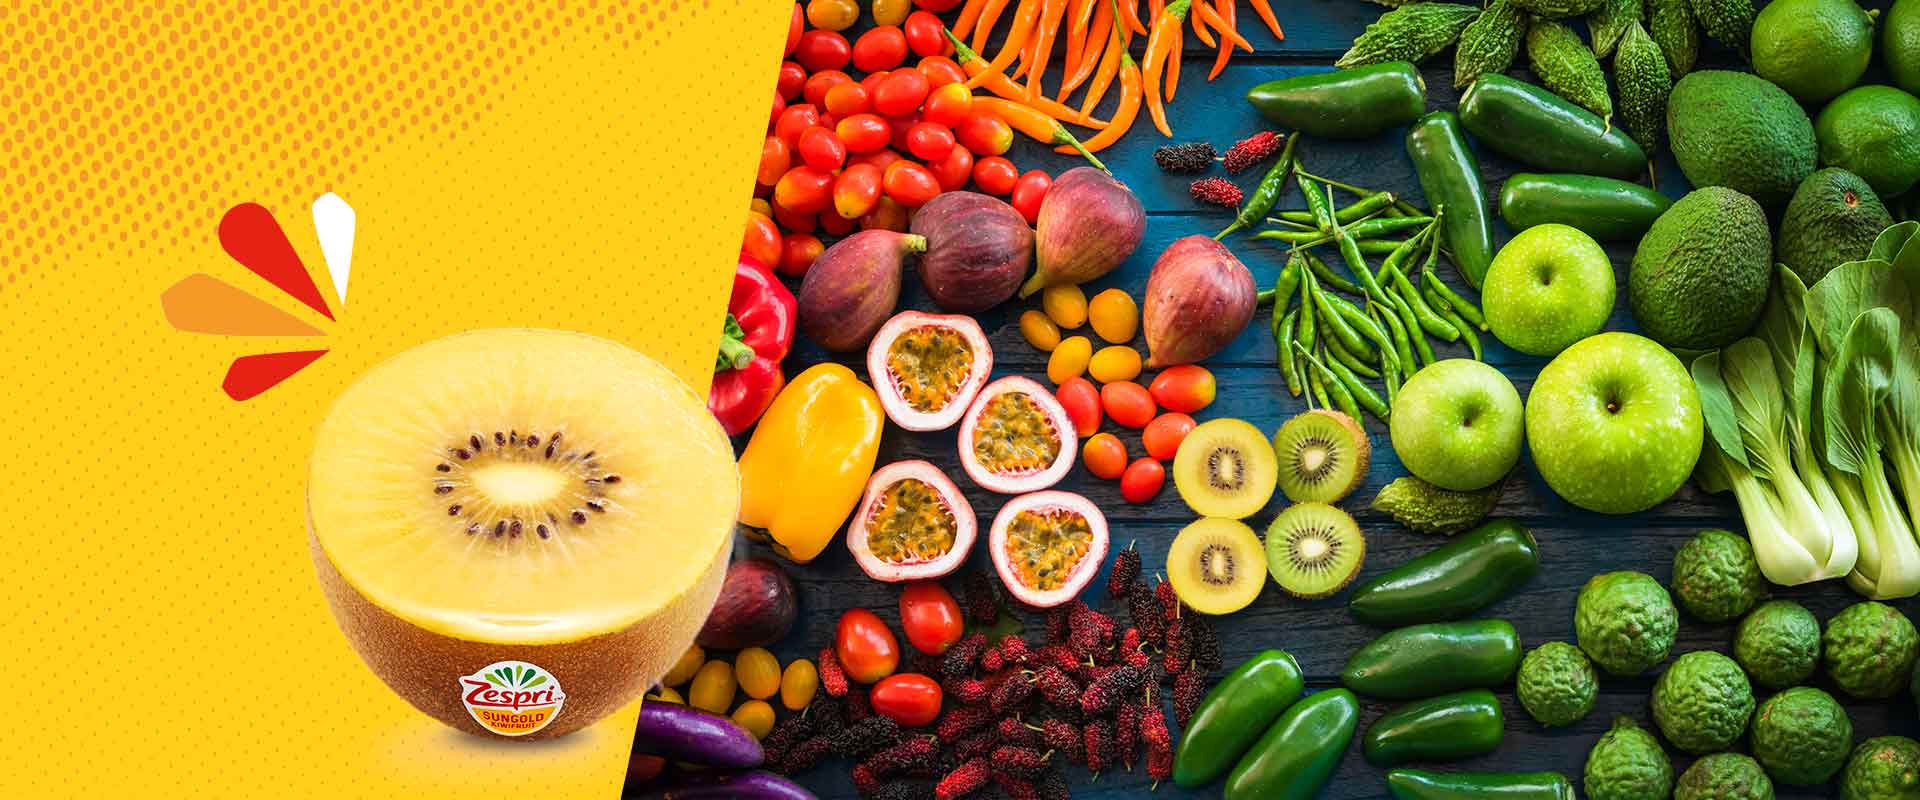 4 manieren om het beste uit groenten en fruit te halen 